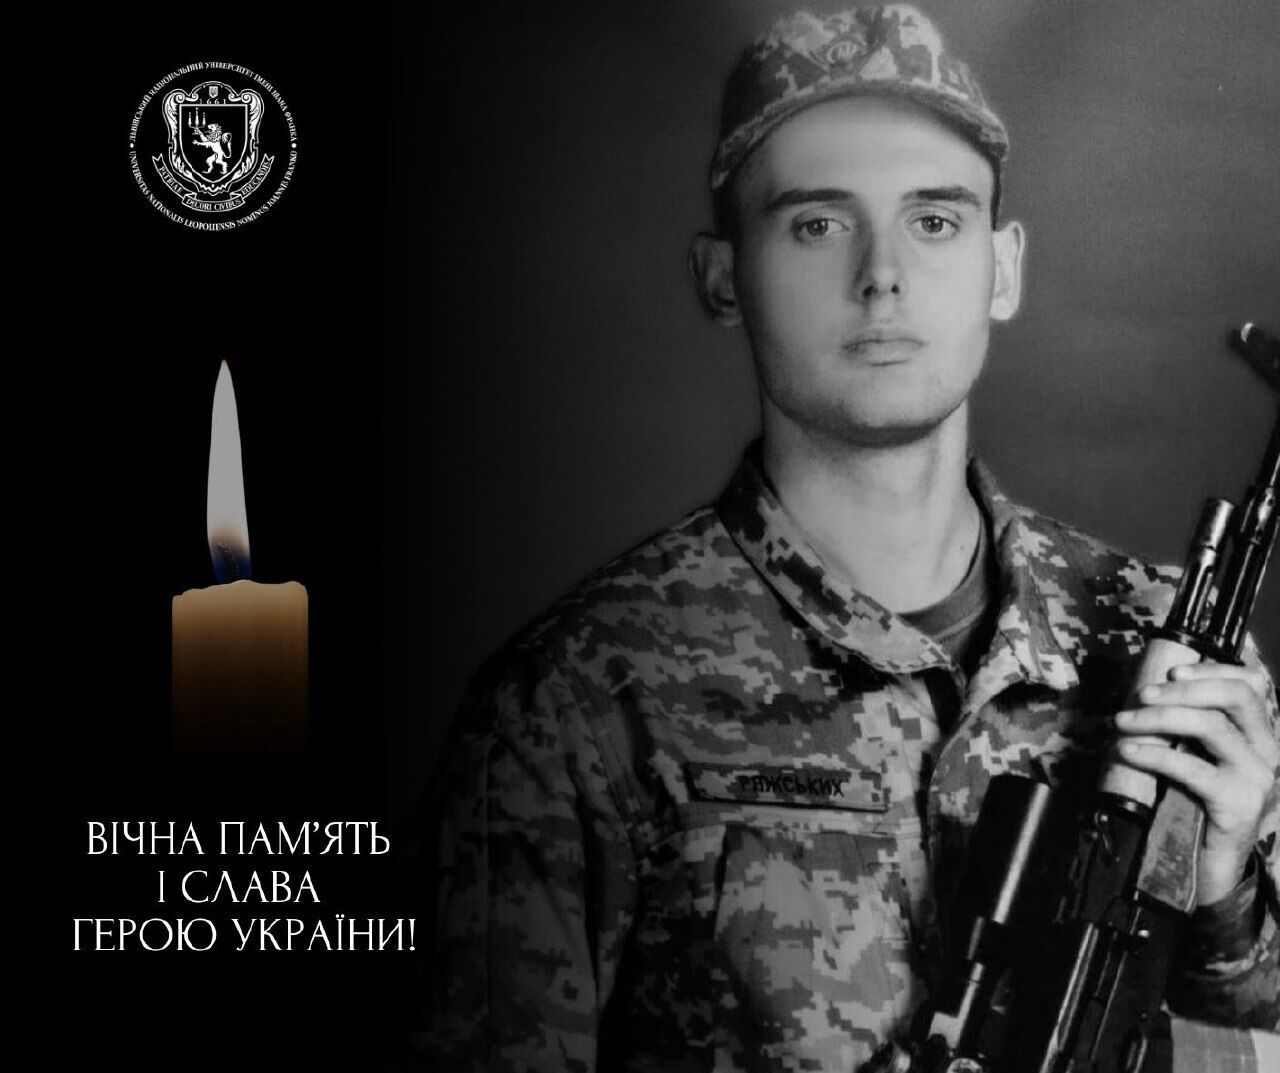 Мав освіту журналіста, однак став на захист України зі зброєю: від поранень помер Герой із Хмельниччини